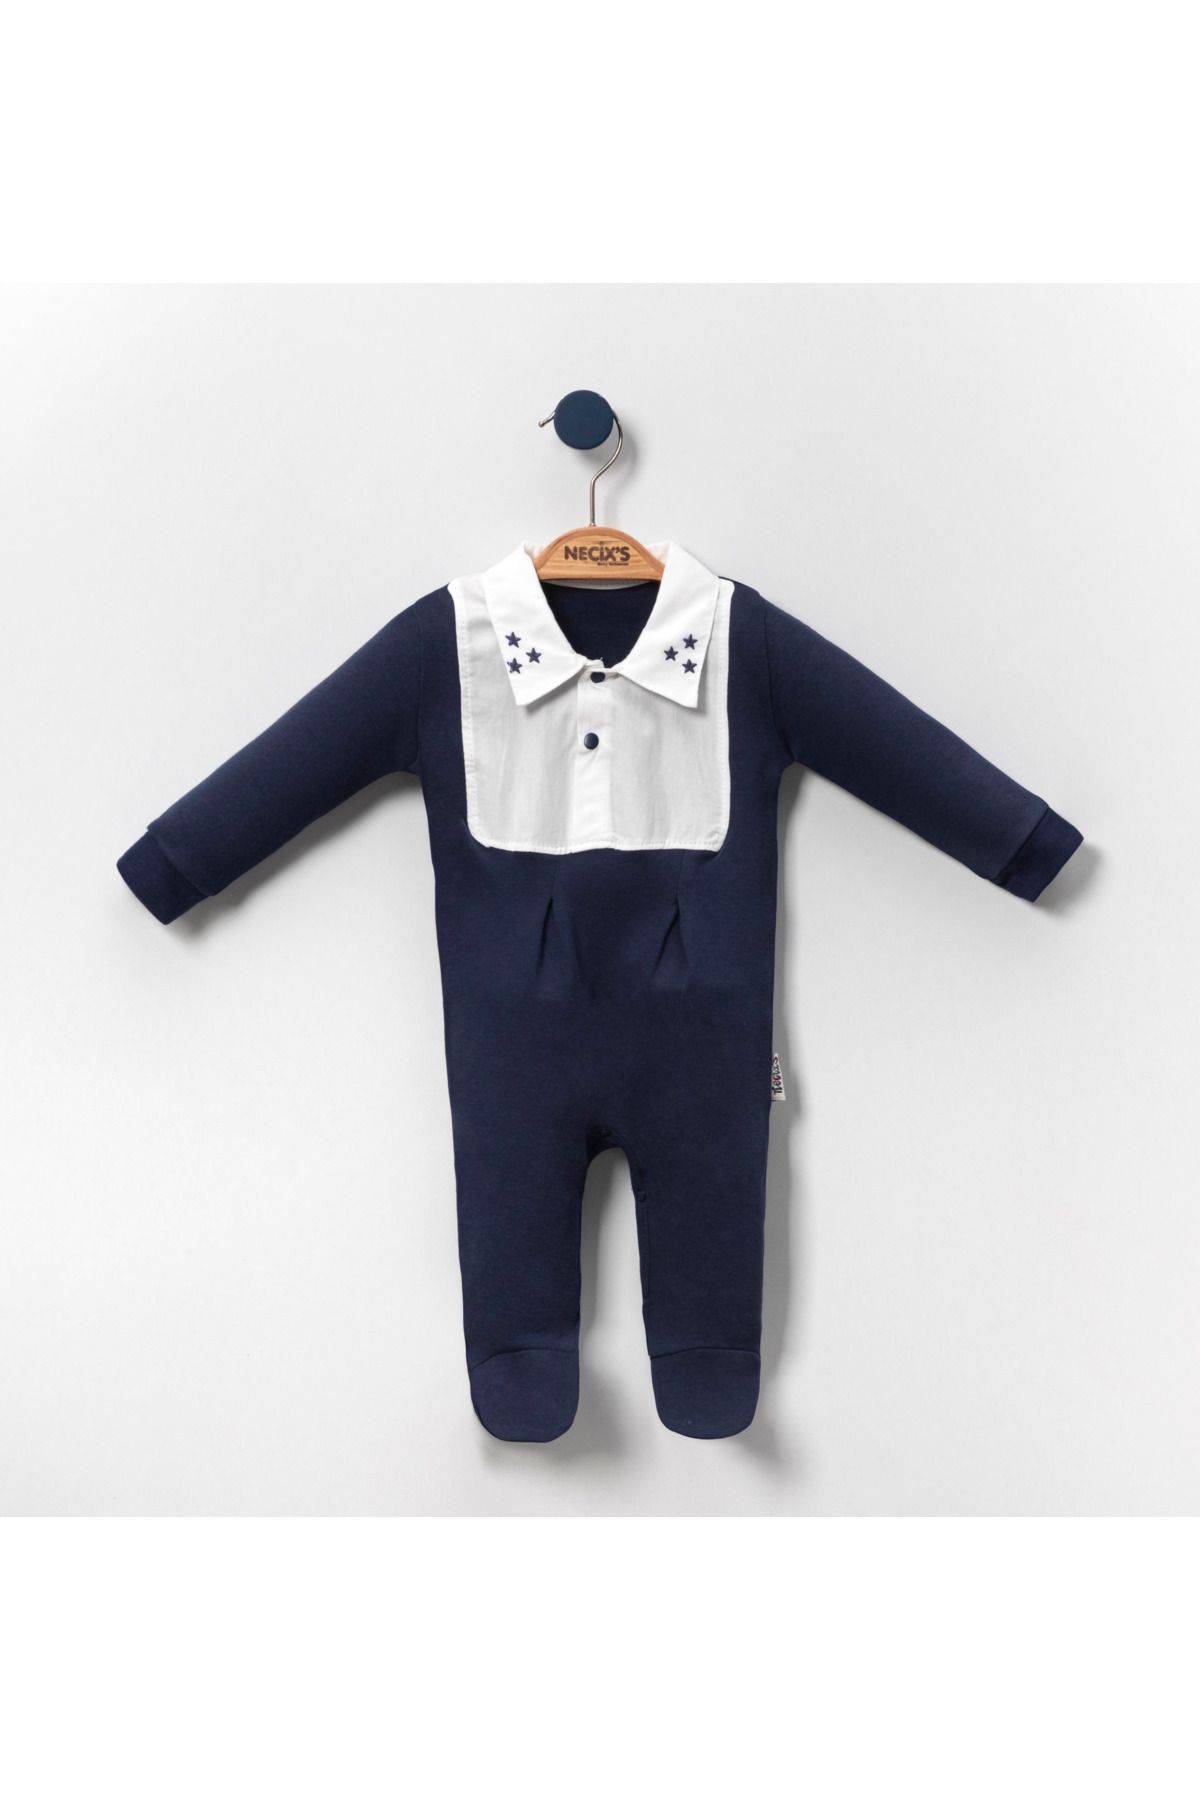 Necix's Pilot Birleşik Süveterli Erkek Bebek Tulum